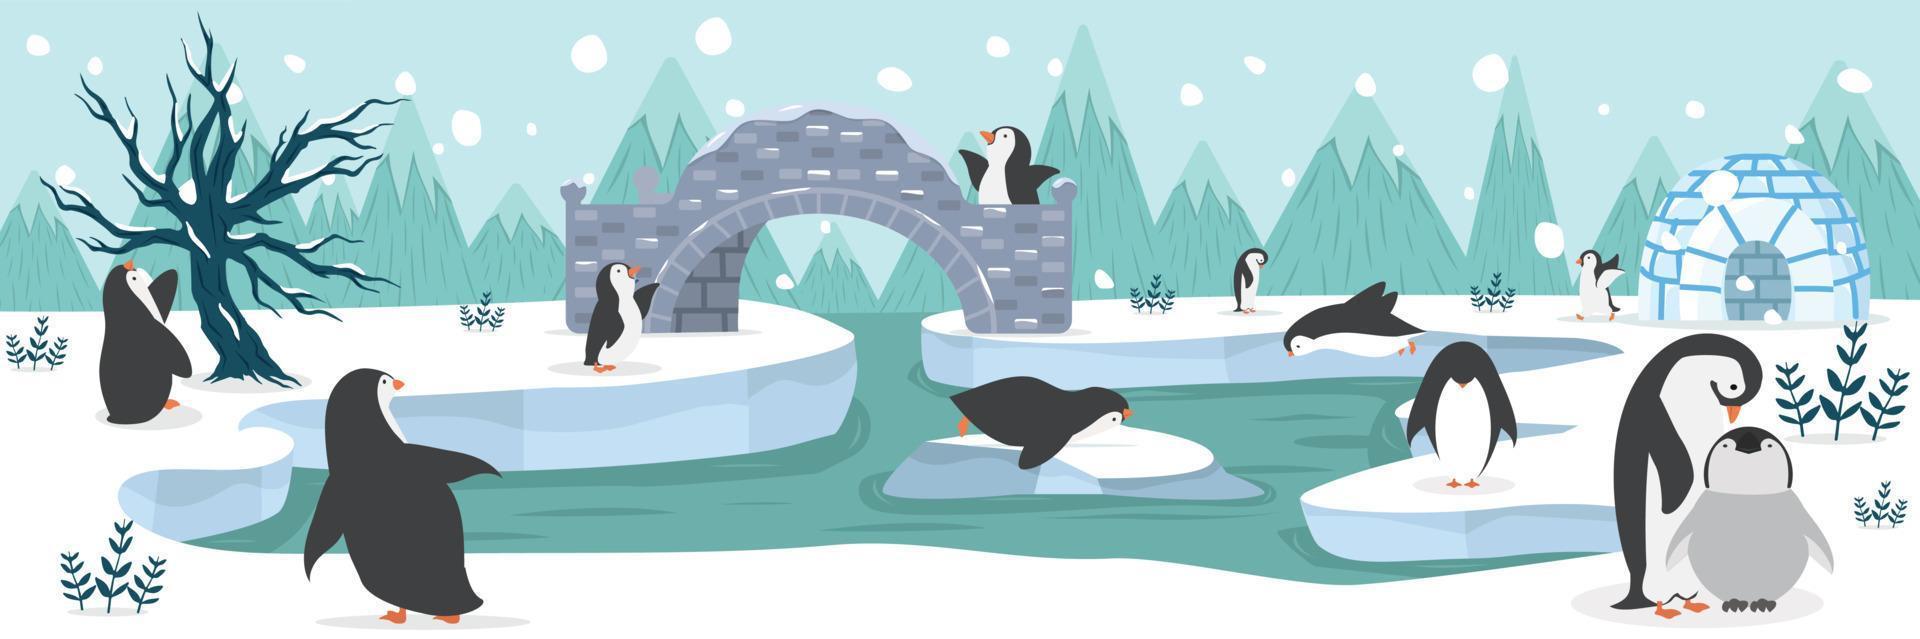 nordpolen arktiska pingviner djur bakgrund vektor